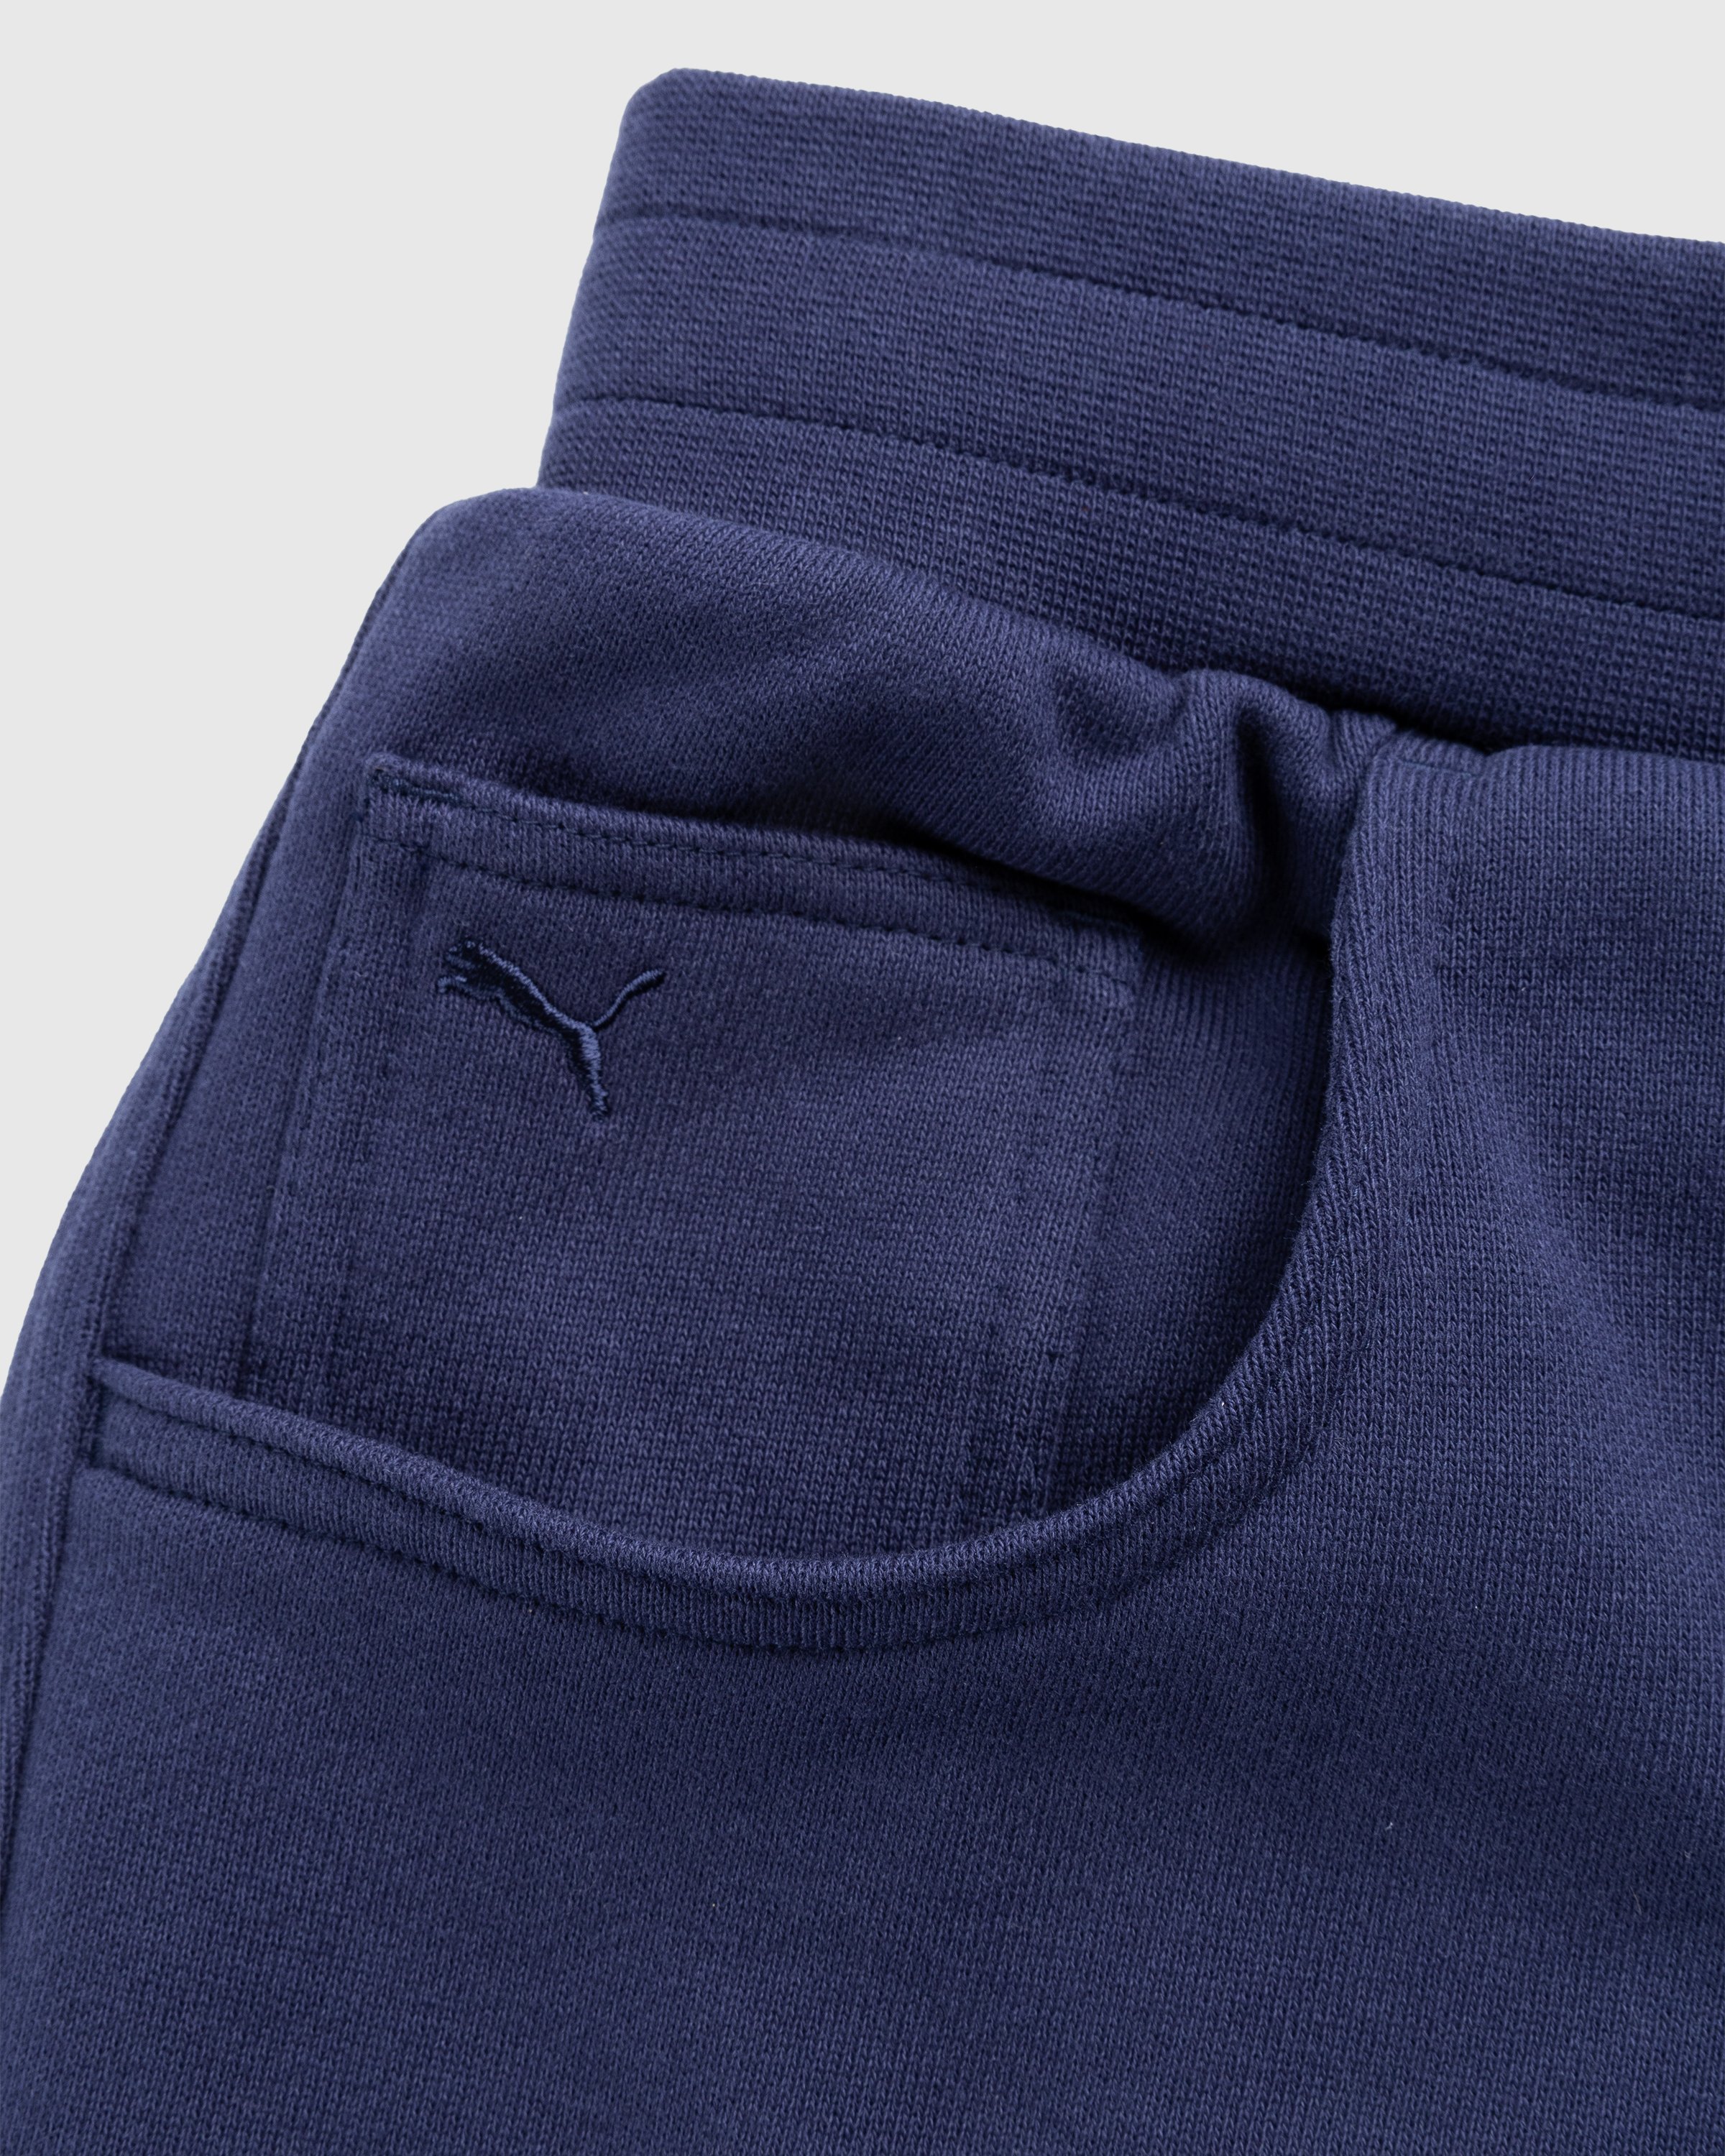 Puma x Noah - Shorts Blue - Clothing - Blue - Image 6